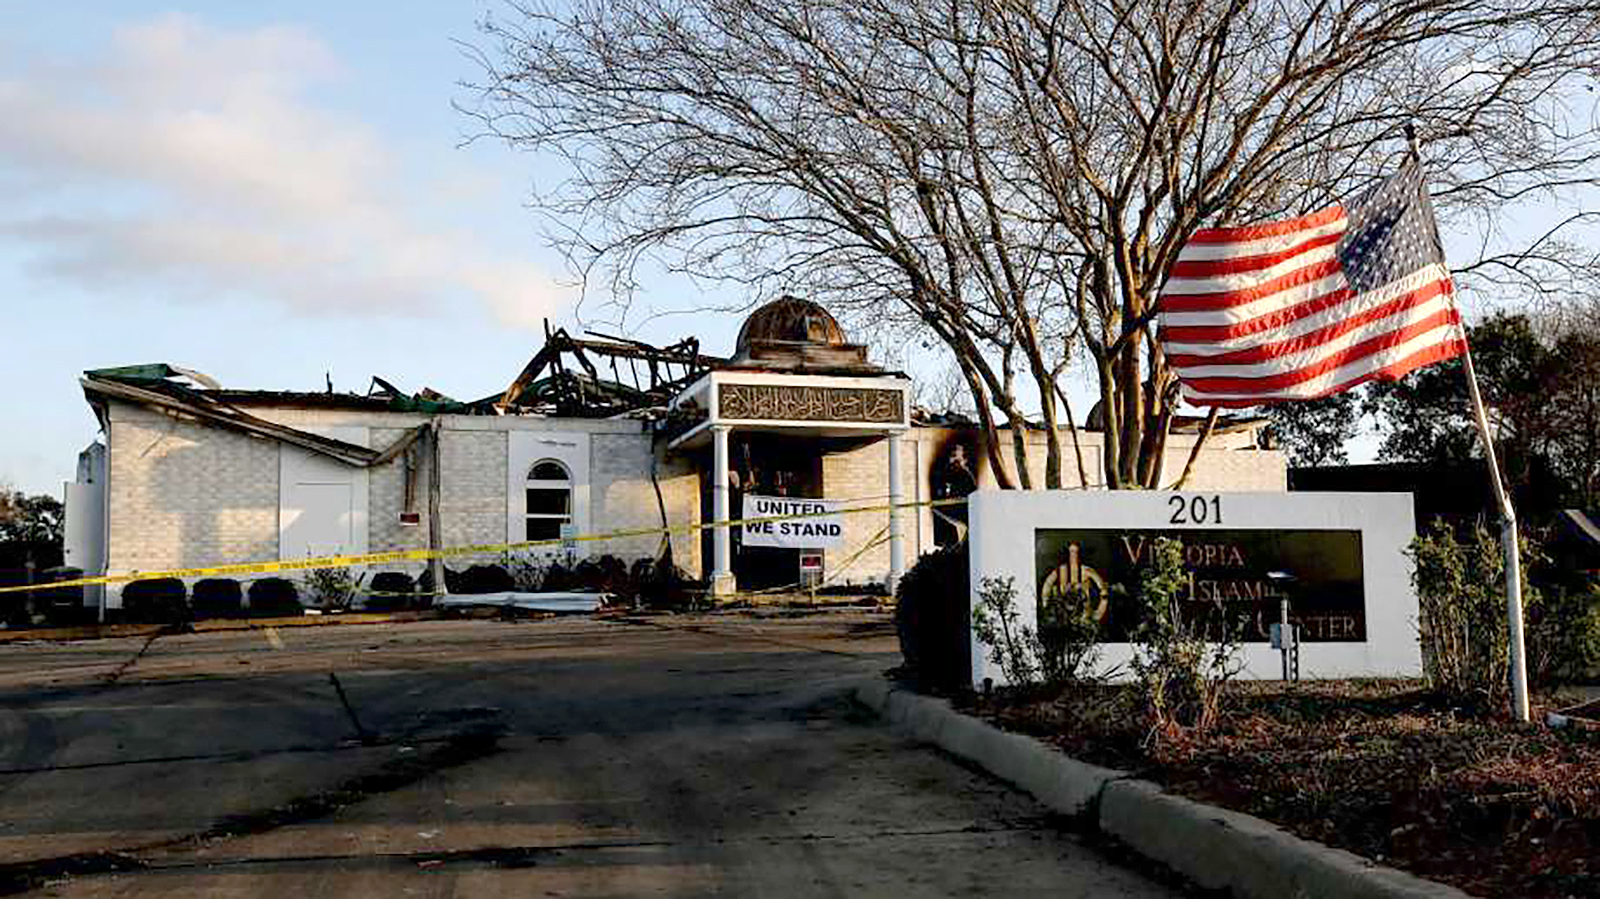 דגל ארה"ב על רקע המסגד השרוף, ויקטוריה - טקסס (צילום:Jon Shapley, מתוך אתר chron).